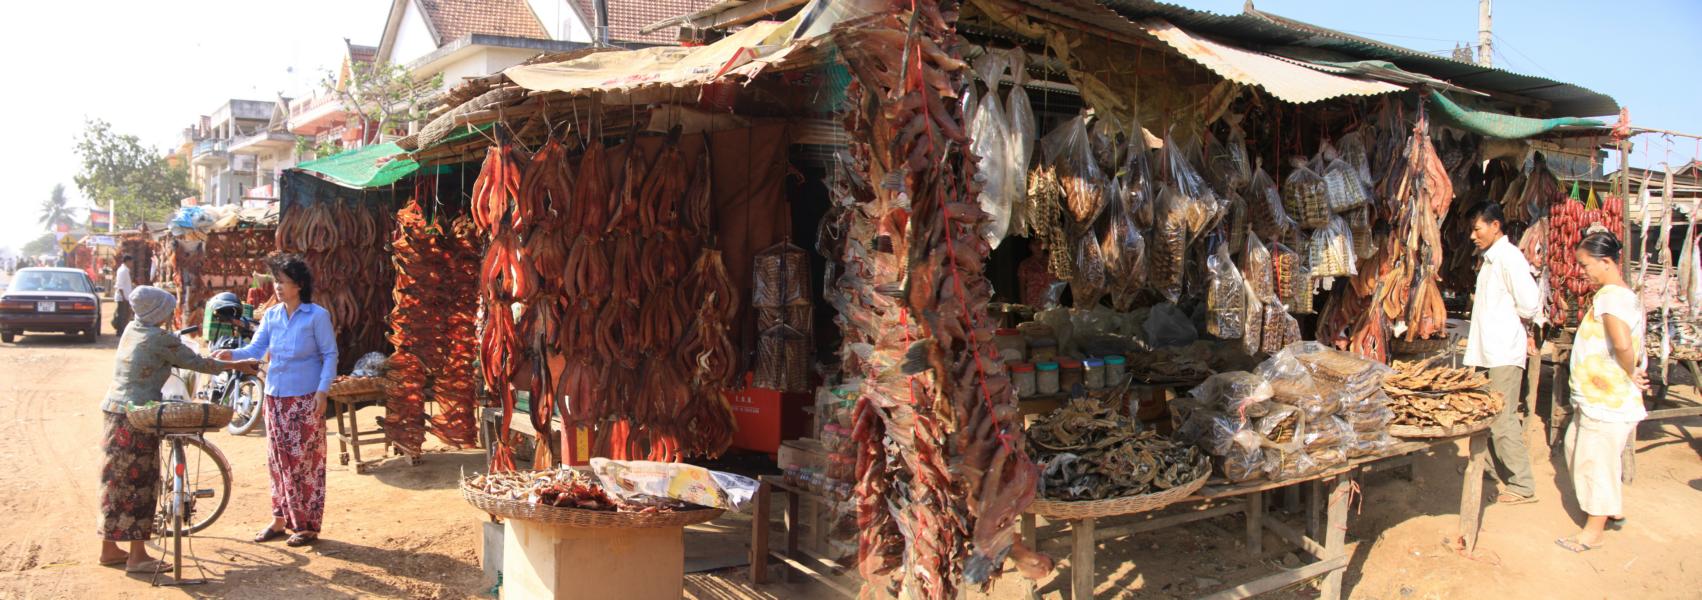  Am Eingang zu einer kleinen Kreisstadt sind mehrere Stände aufgebaut, wo man Fisch verkauft. Diesen fängt man in einer riesigen Seenlandschaft etwa 70km von Siem Reap entfernt. Die meiste Ware ist getrocknet . 